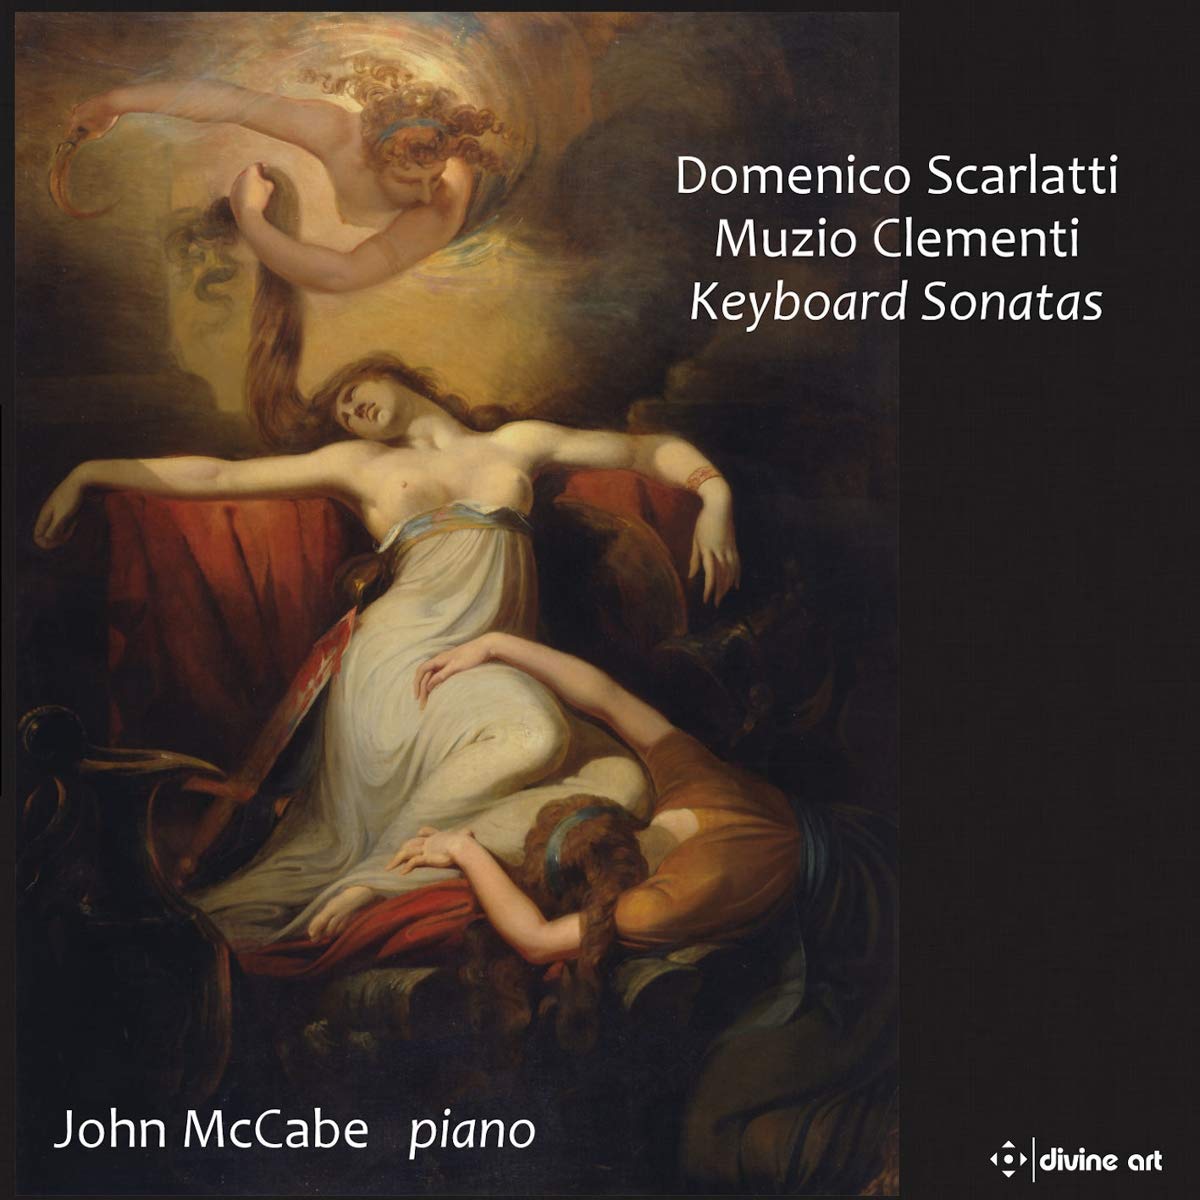 Audio Cd Domenico Scarlatti / Muzio Clementi - Keyboard Sonatas (2 Cd) NUOVO SIGILLATO, EDIZIONE DEL 14/08/2019 SUBITO DISPONIBILE